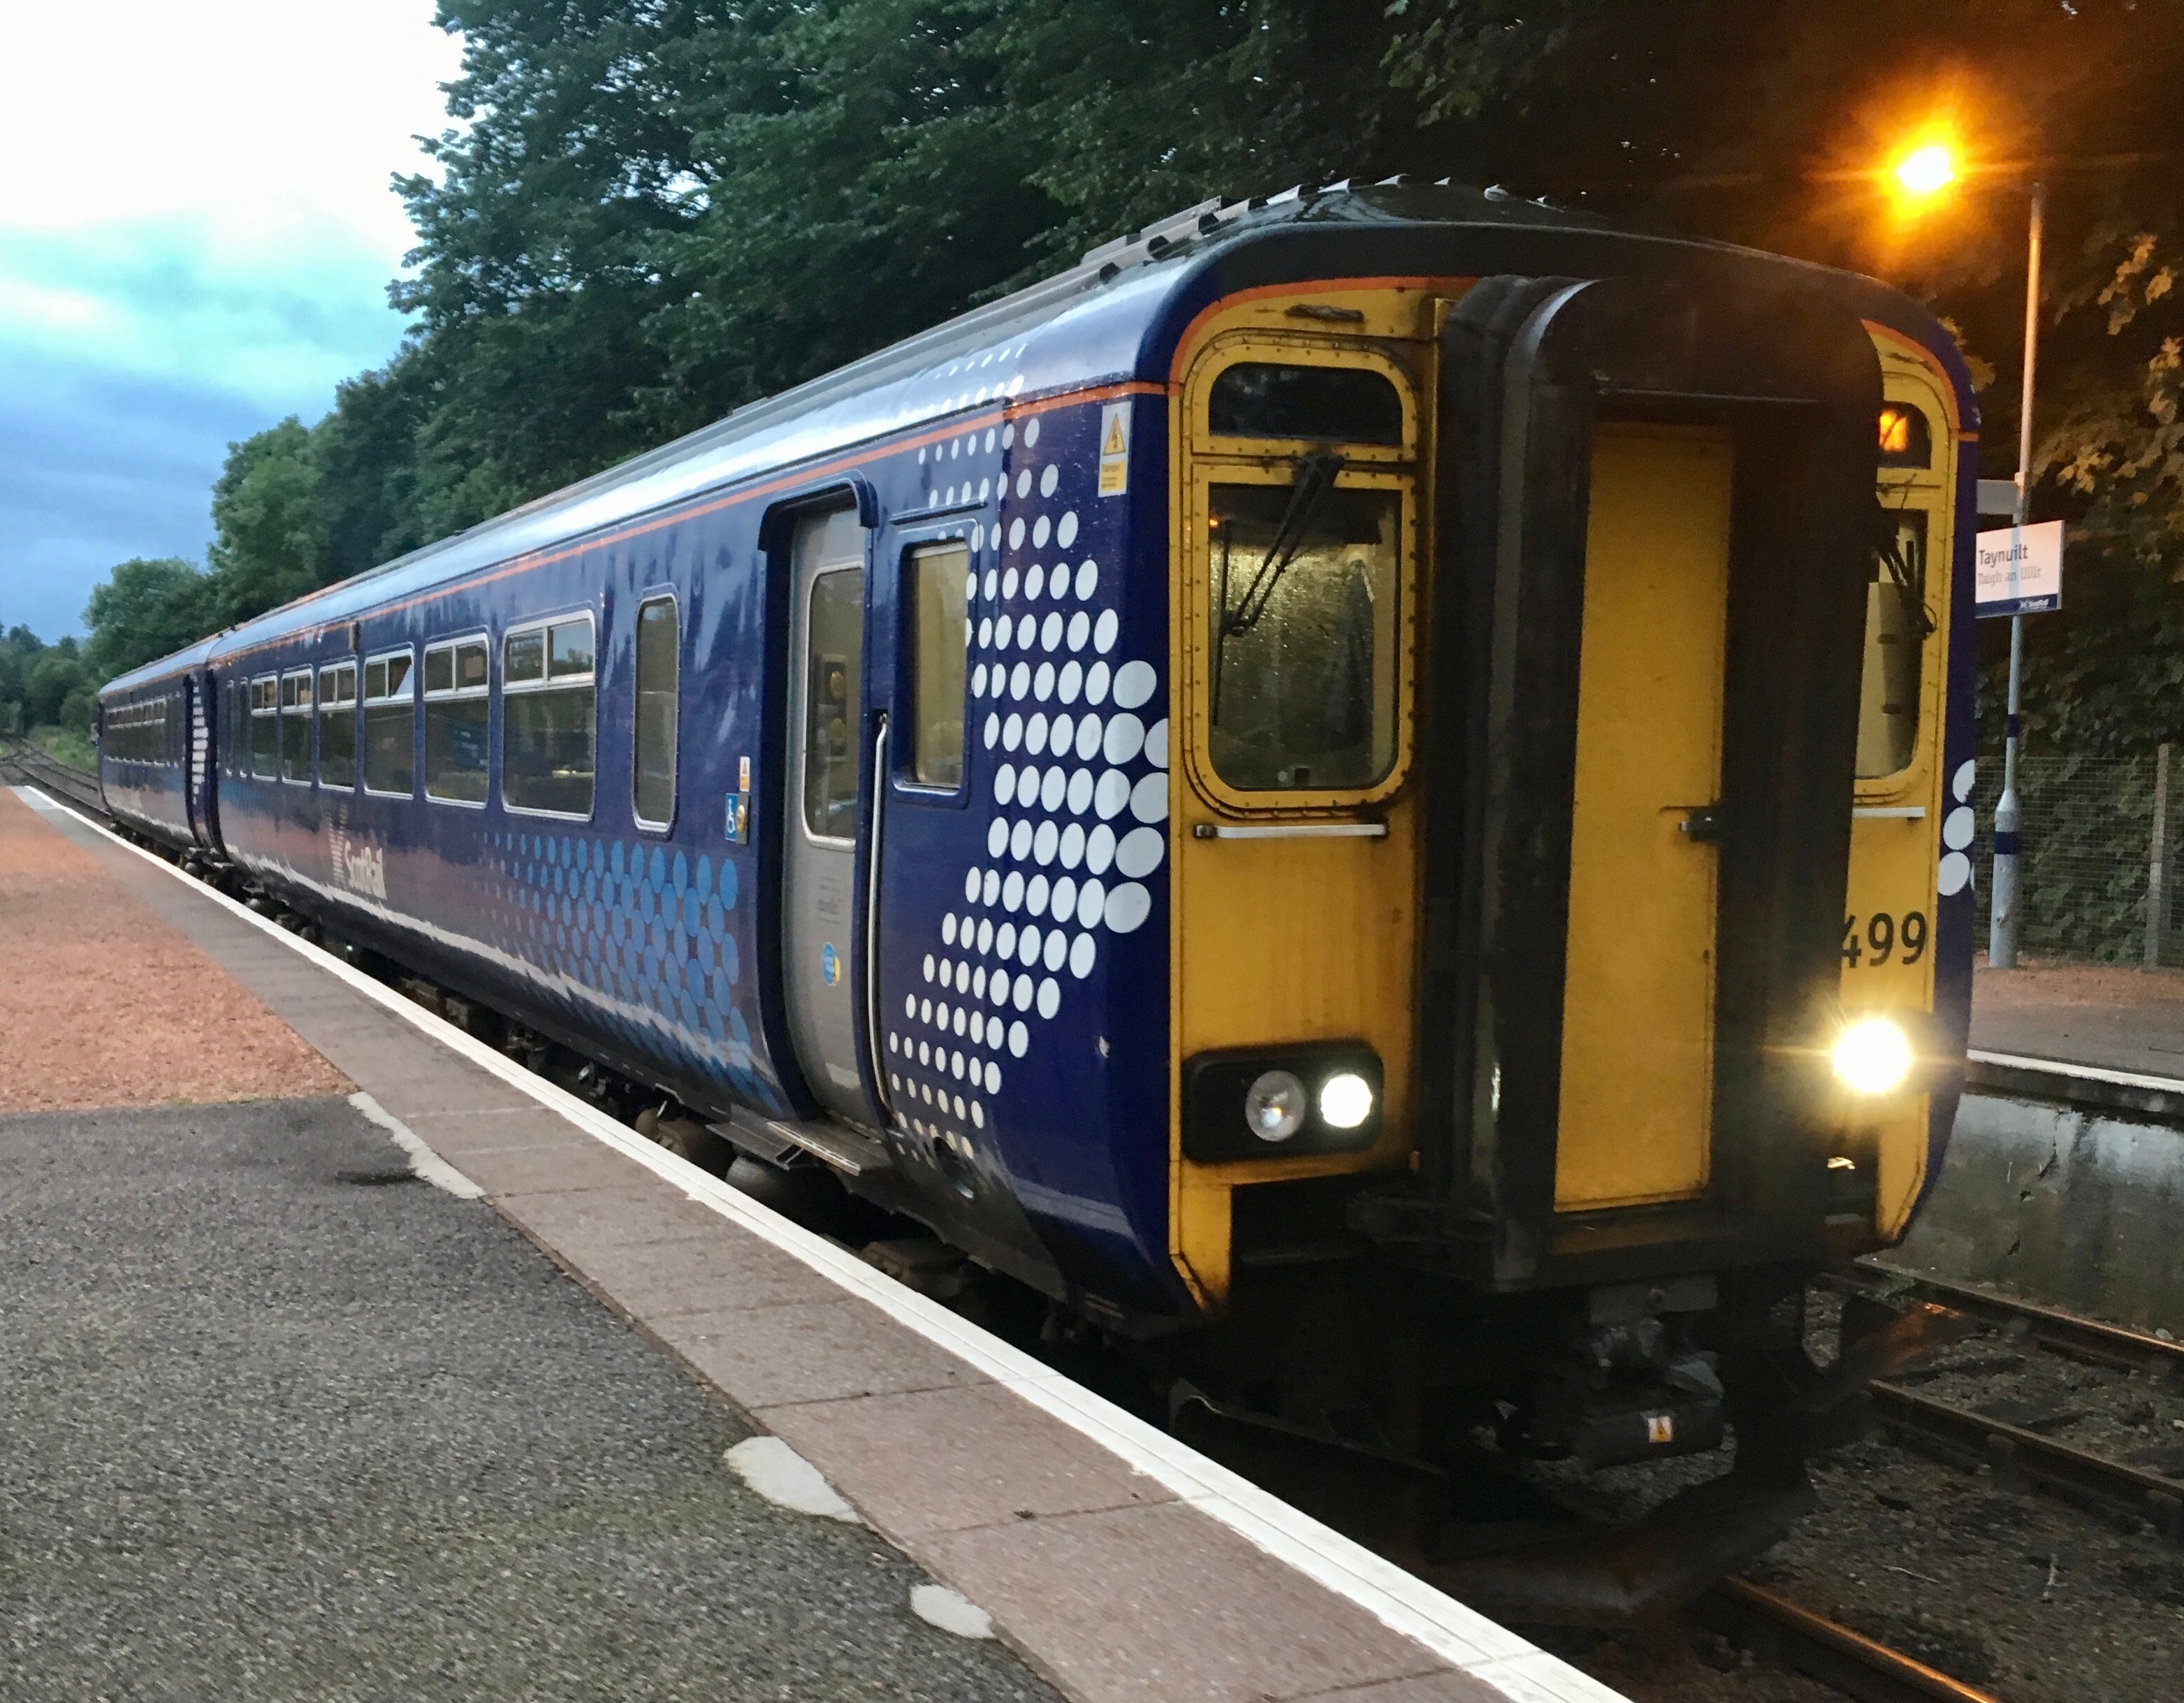 A Scotrail Train